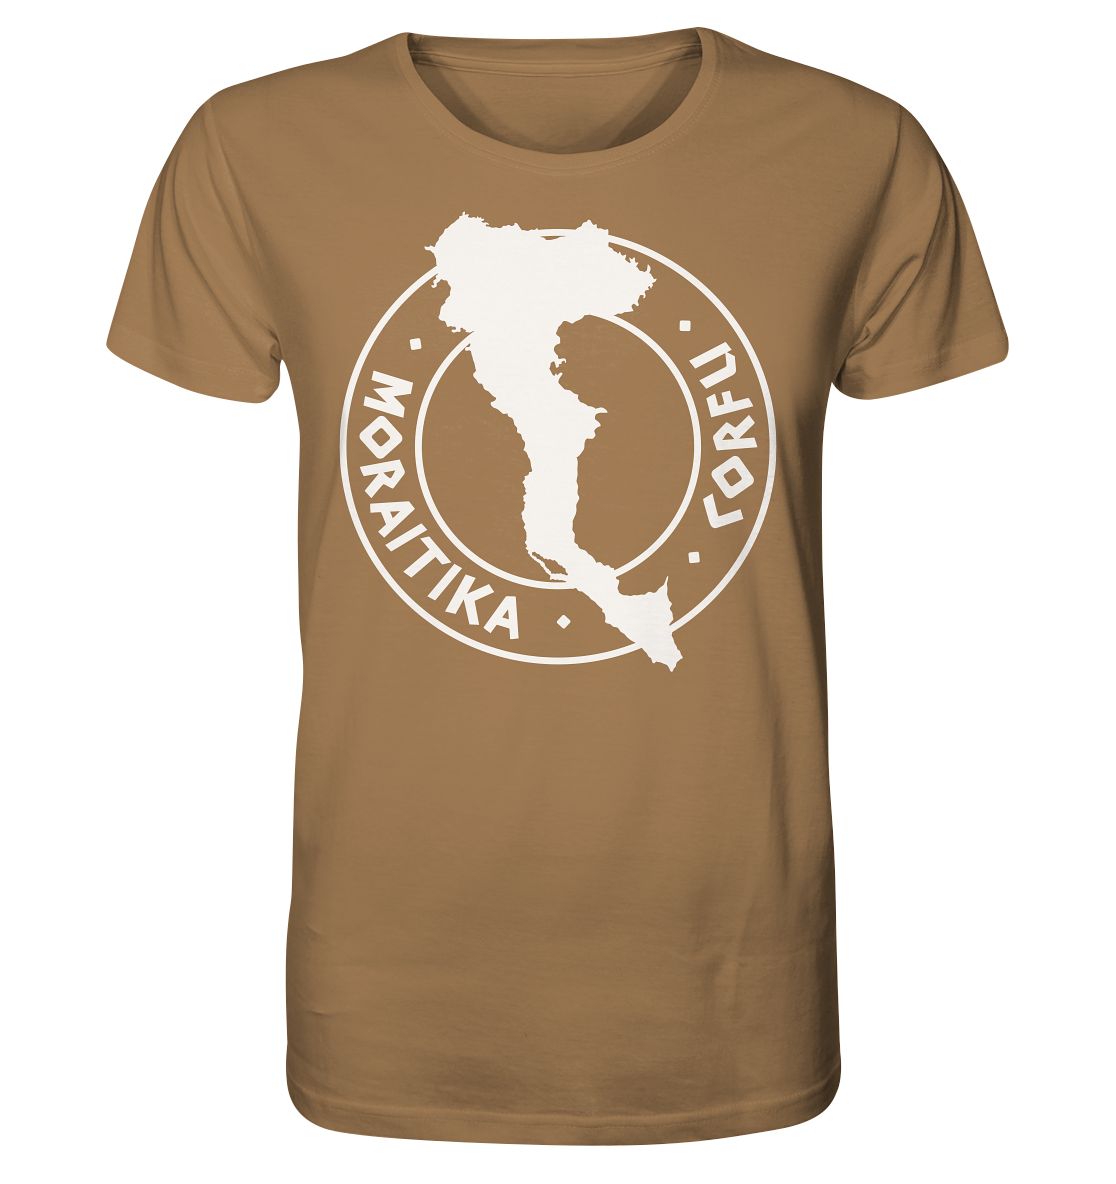 Corfu Moraitika Silhouette Stamp - Organic Shirt